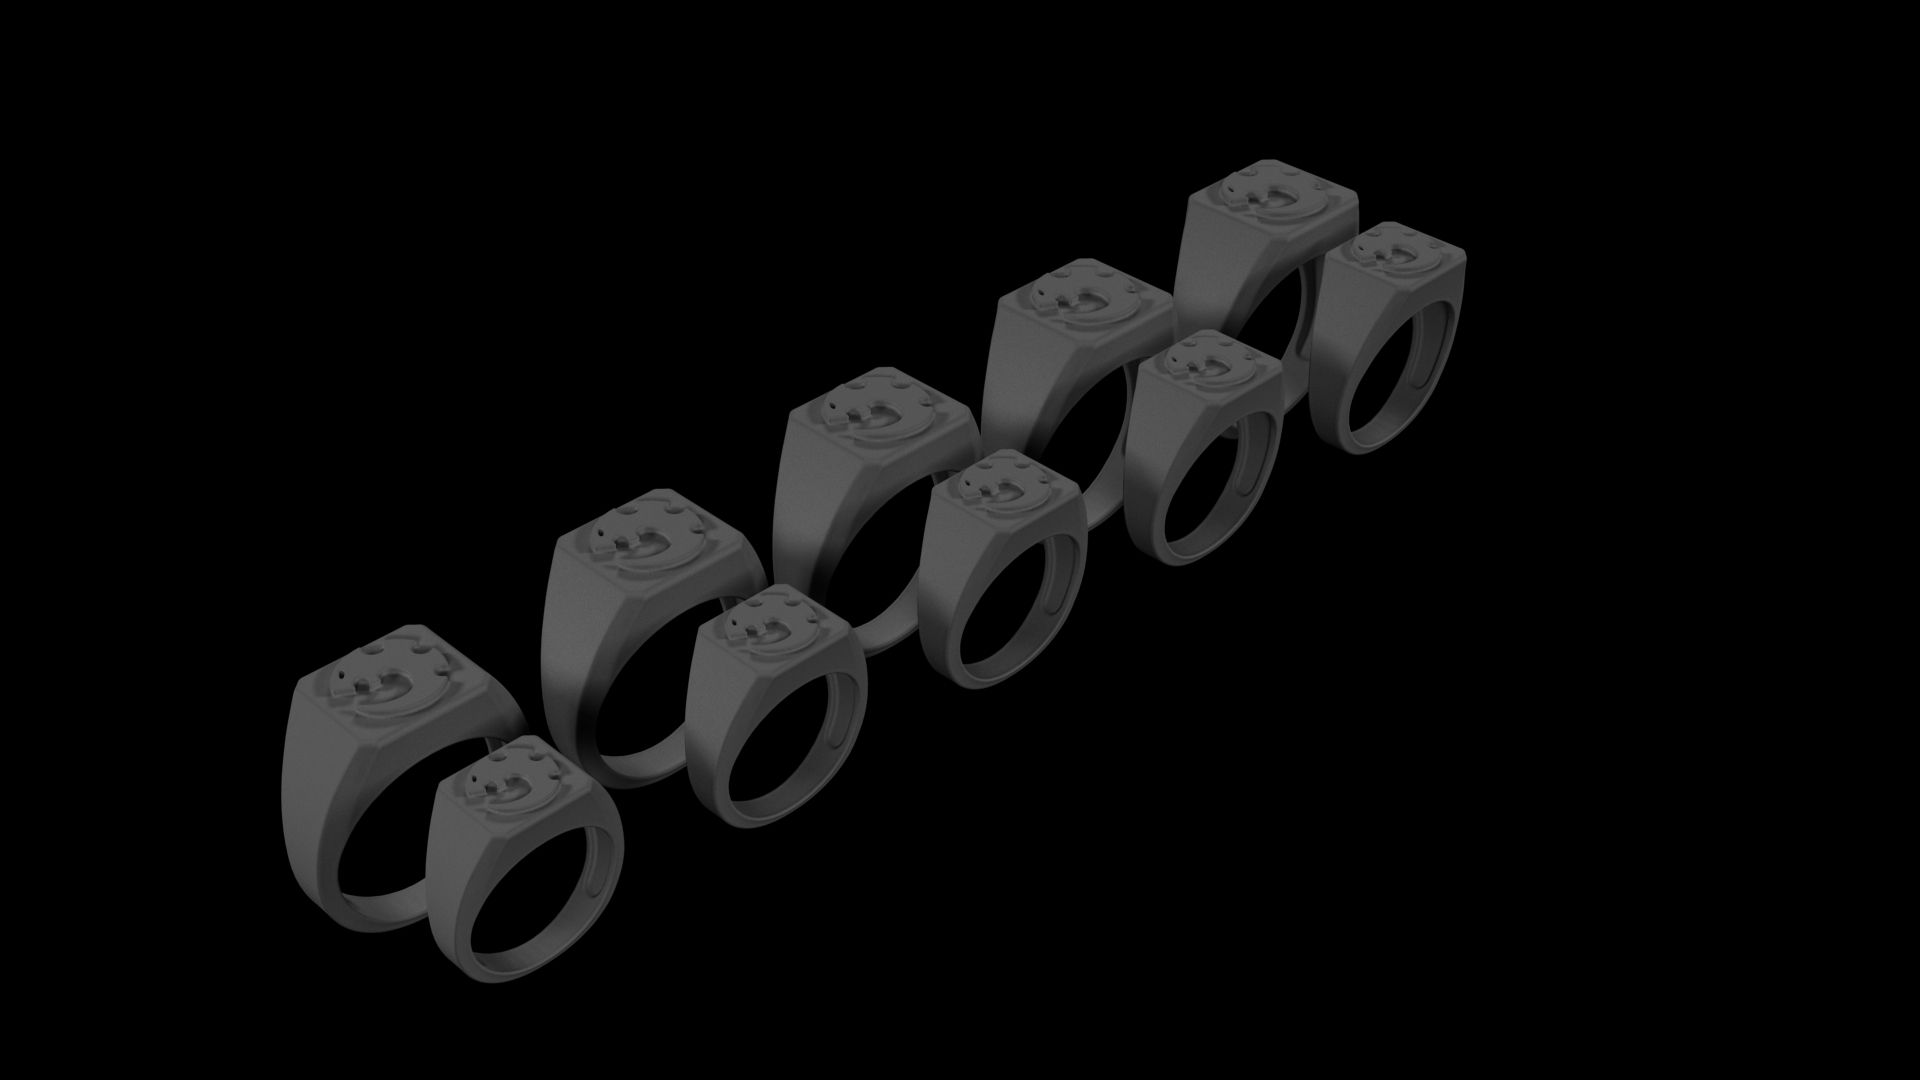 2zv.jpg Download file Warhammer 40k - Genostealer Cults Ring Set. • 3D printable object, PRiNG